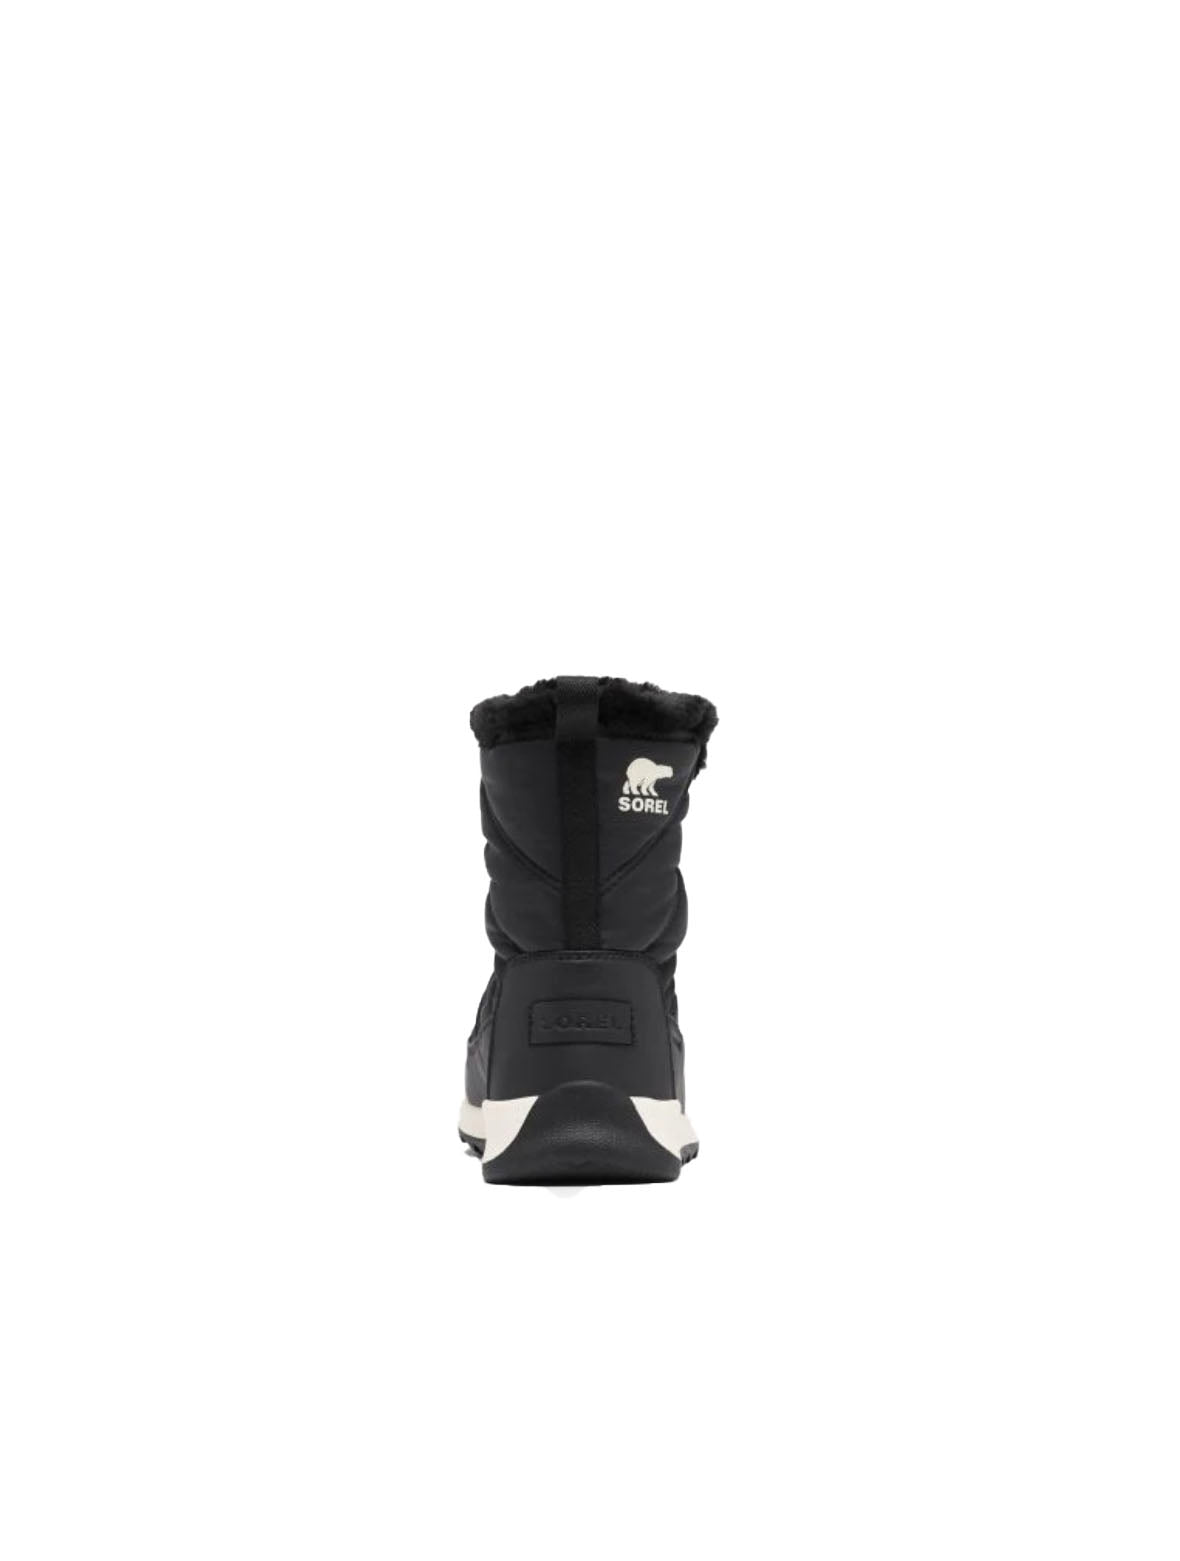 Sorel Whitney II Lace Boot in Black